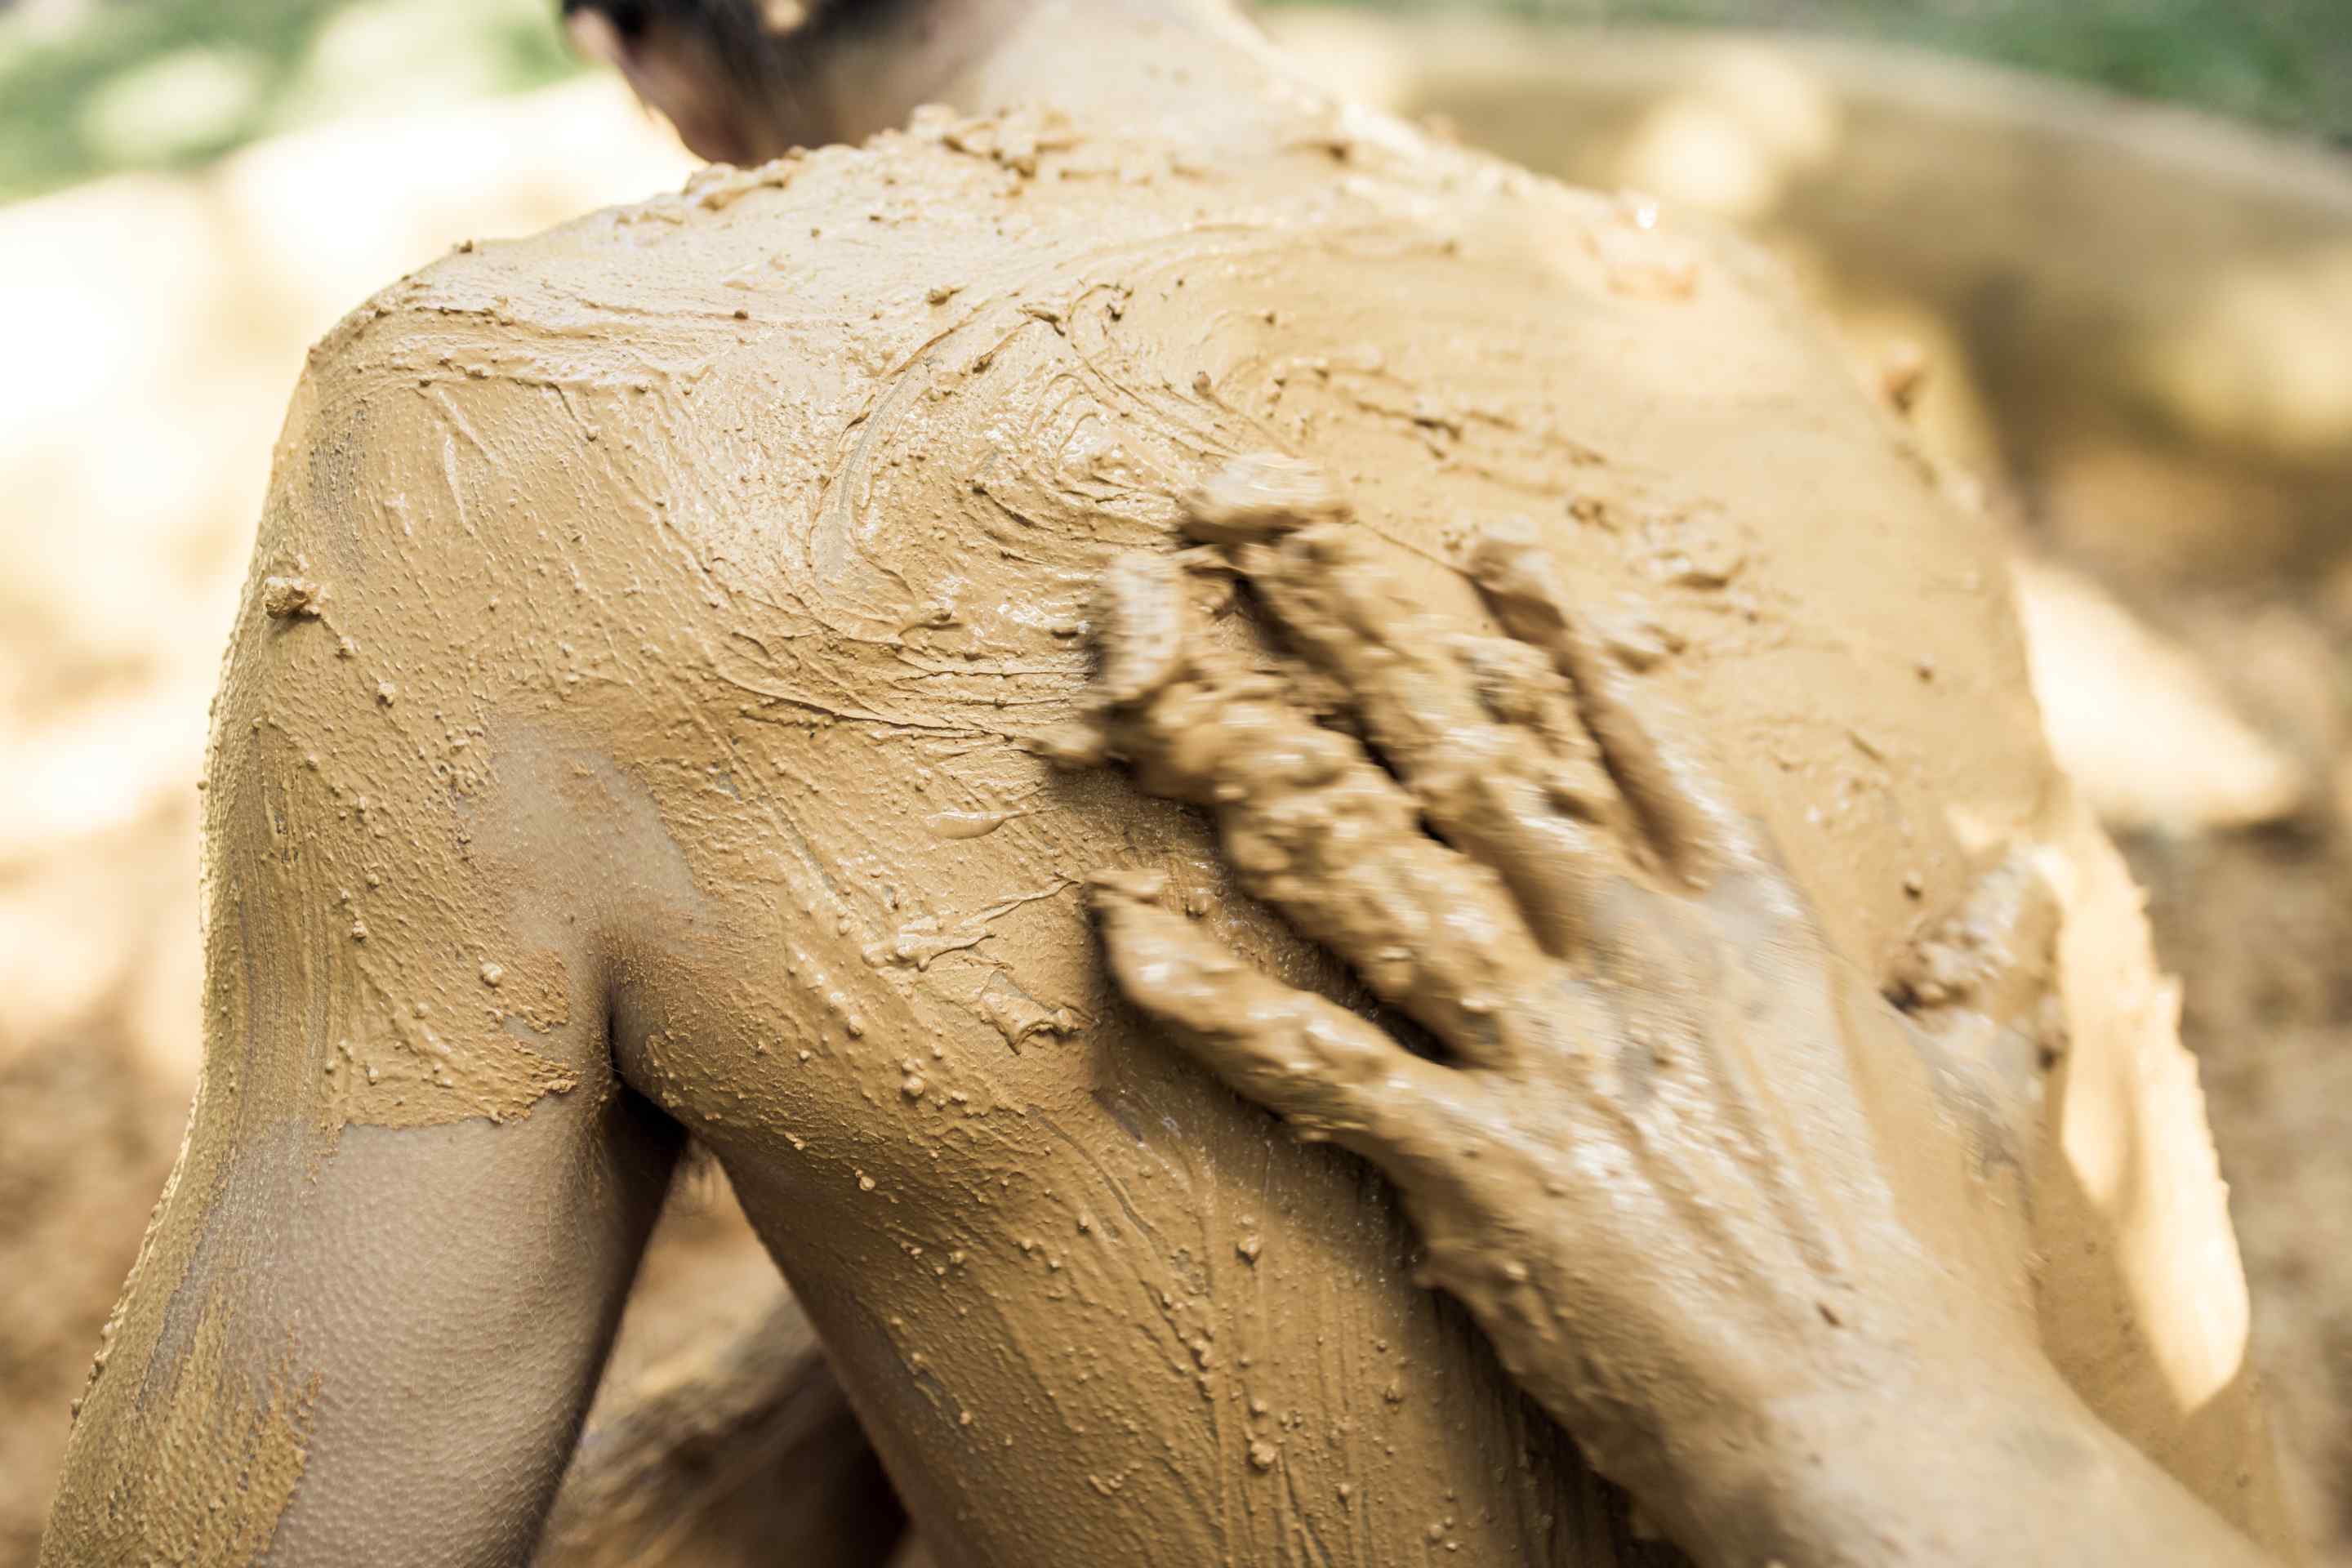 guest-having-mud-bath.jpg